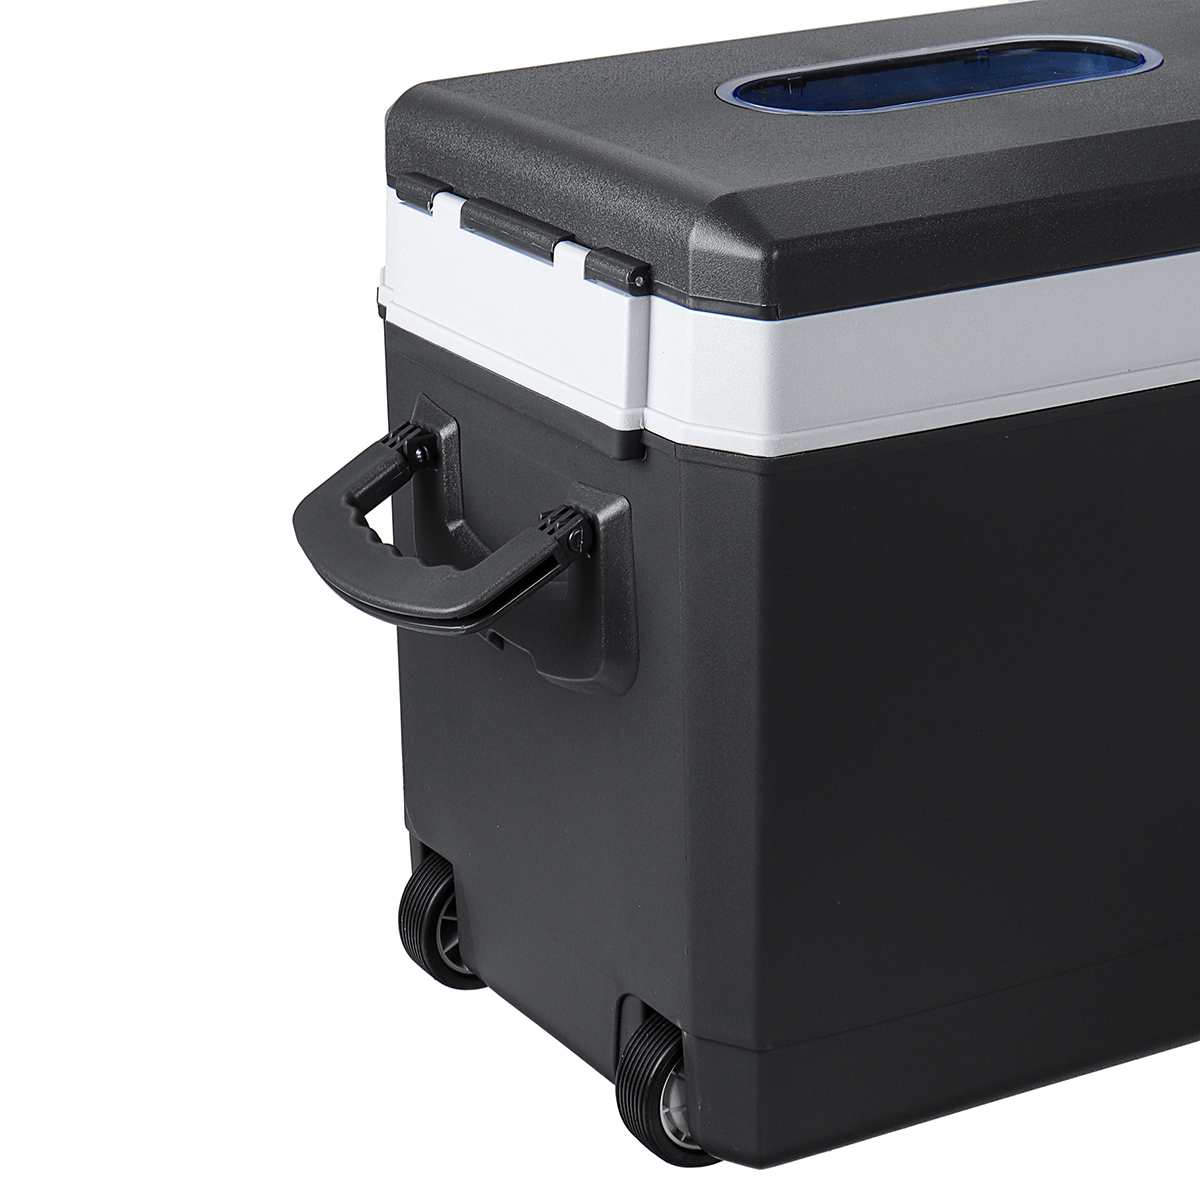 35L Portable Freezer Fridge Car Boat Caravan Home Cooler Refrigerator AU Plug - Auto GoShop